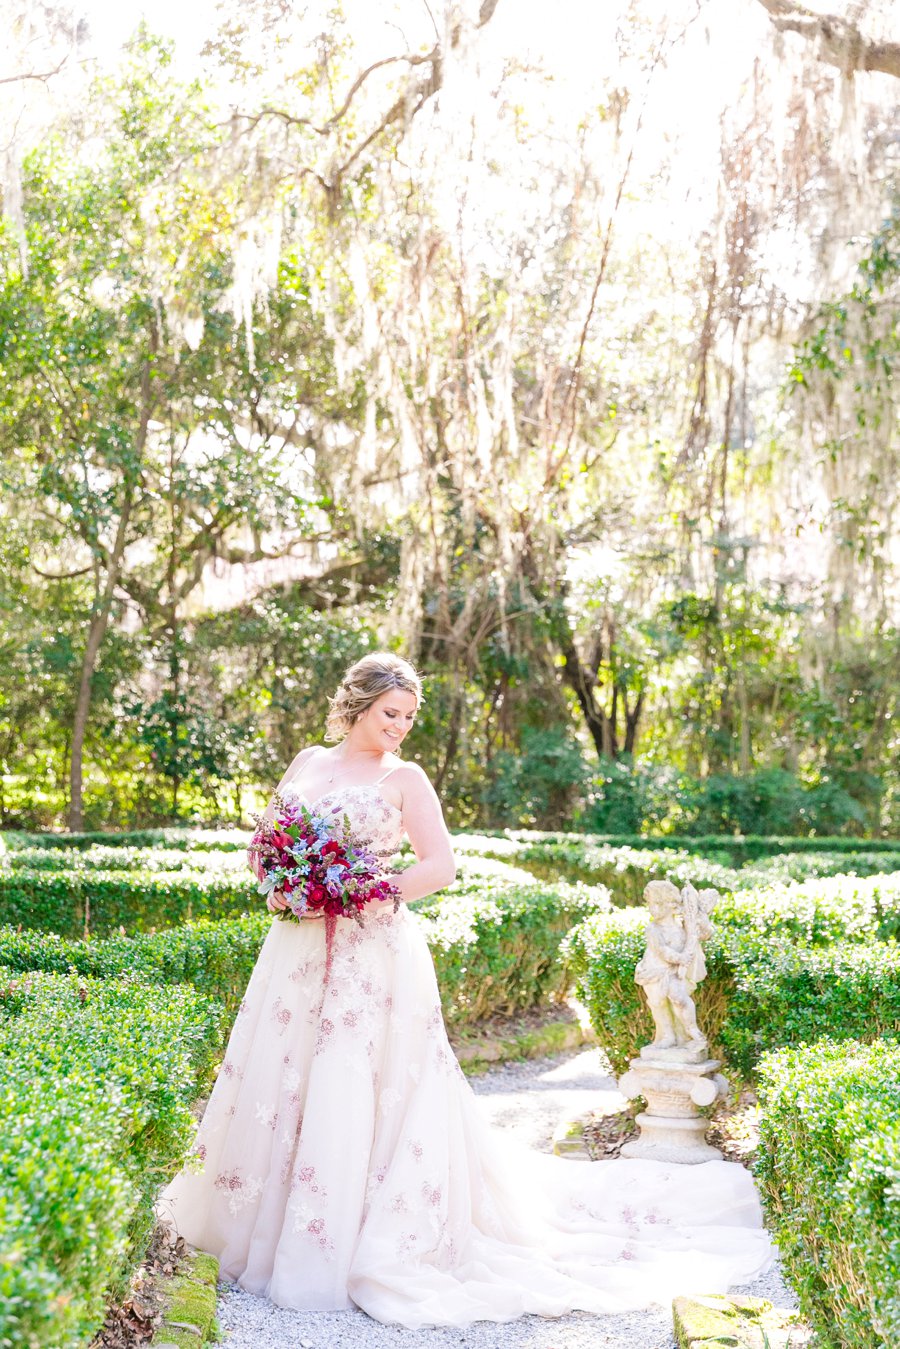 An Elegant Red & Blue Rustic South Carolina Wedding via TheELD.com